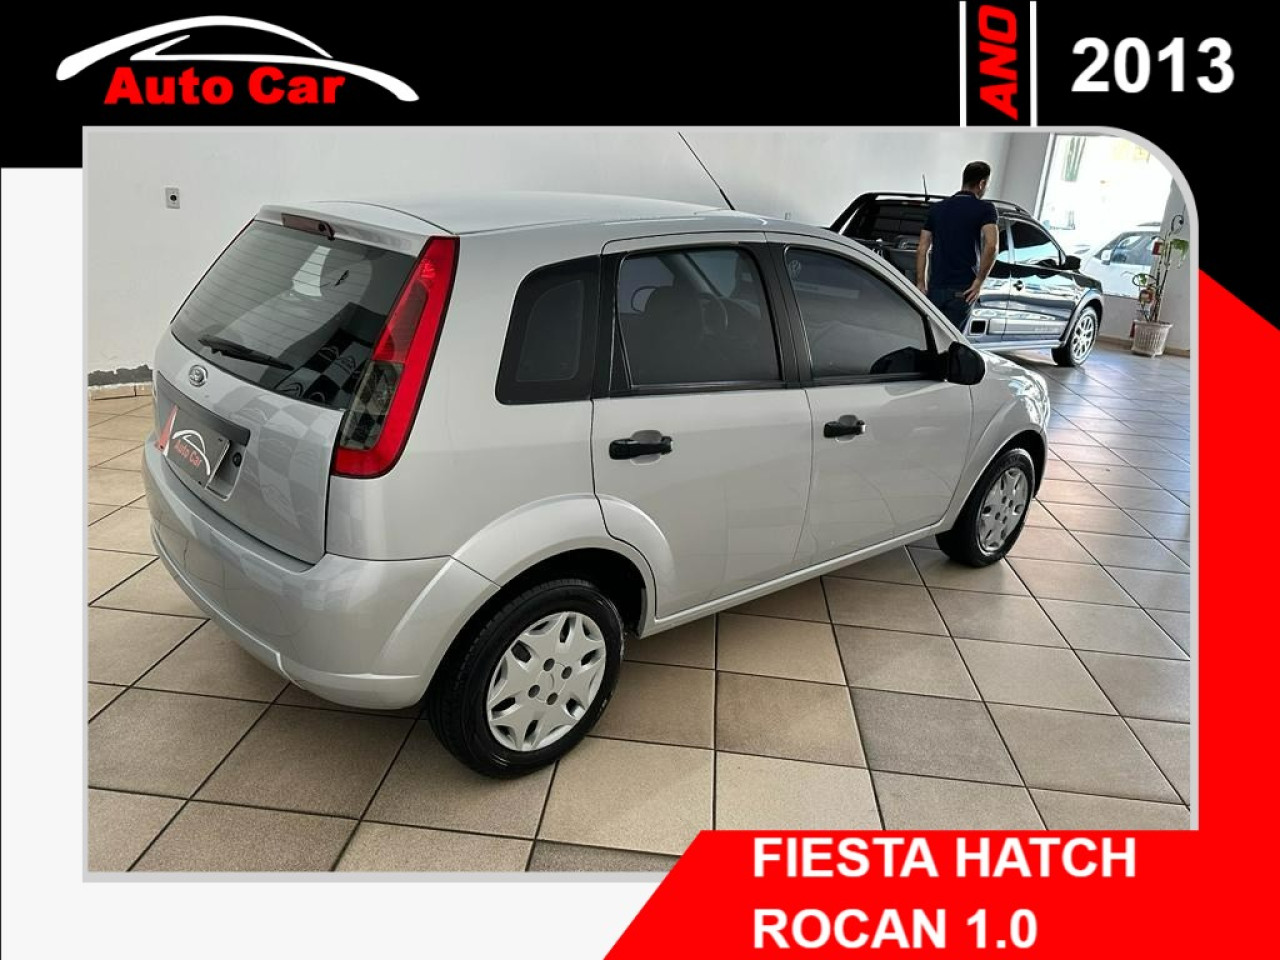 Fiesta Hatch 1.0 4P FLEX